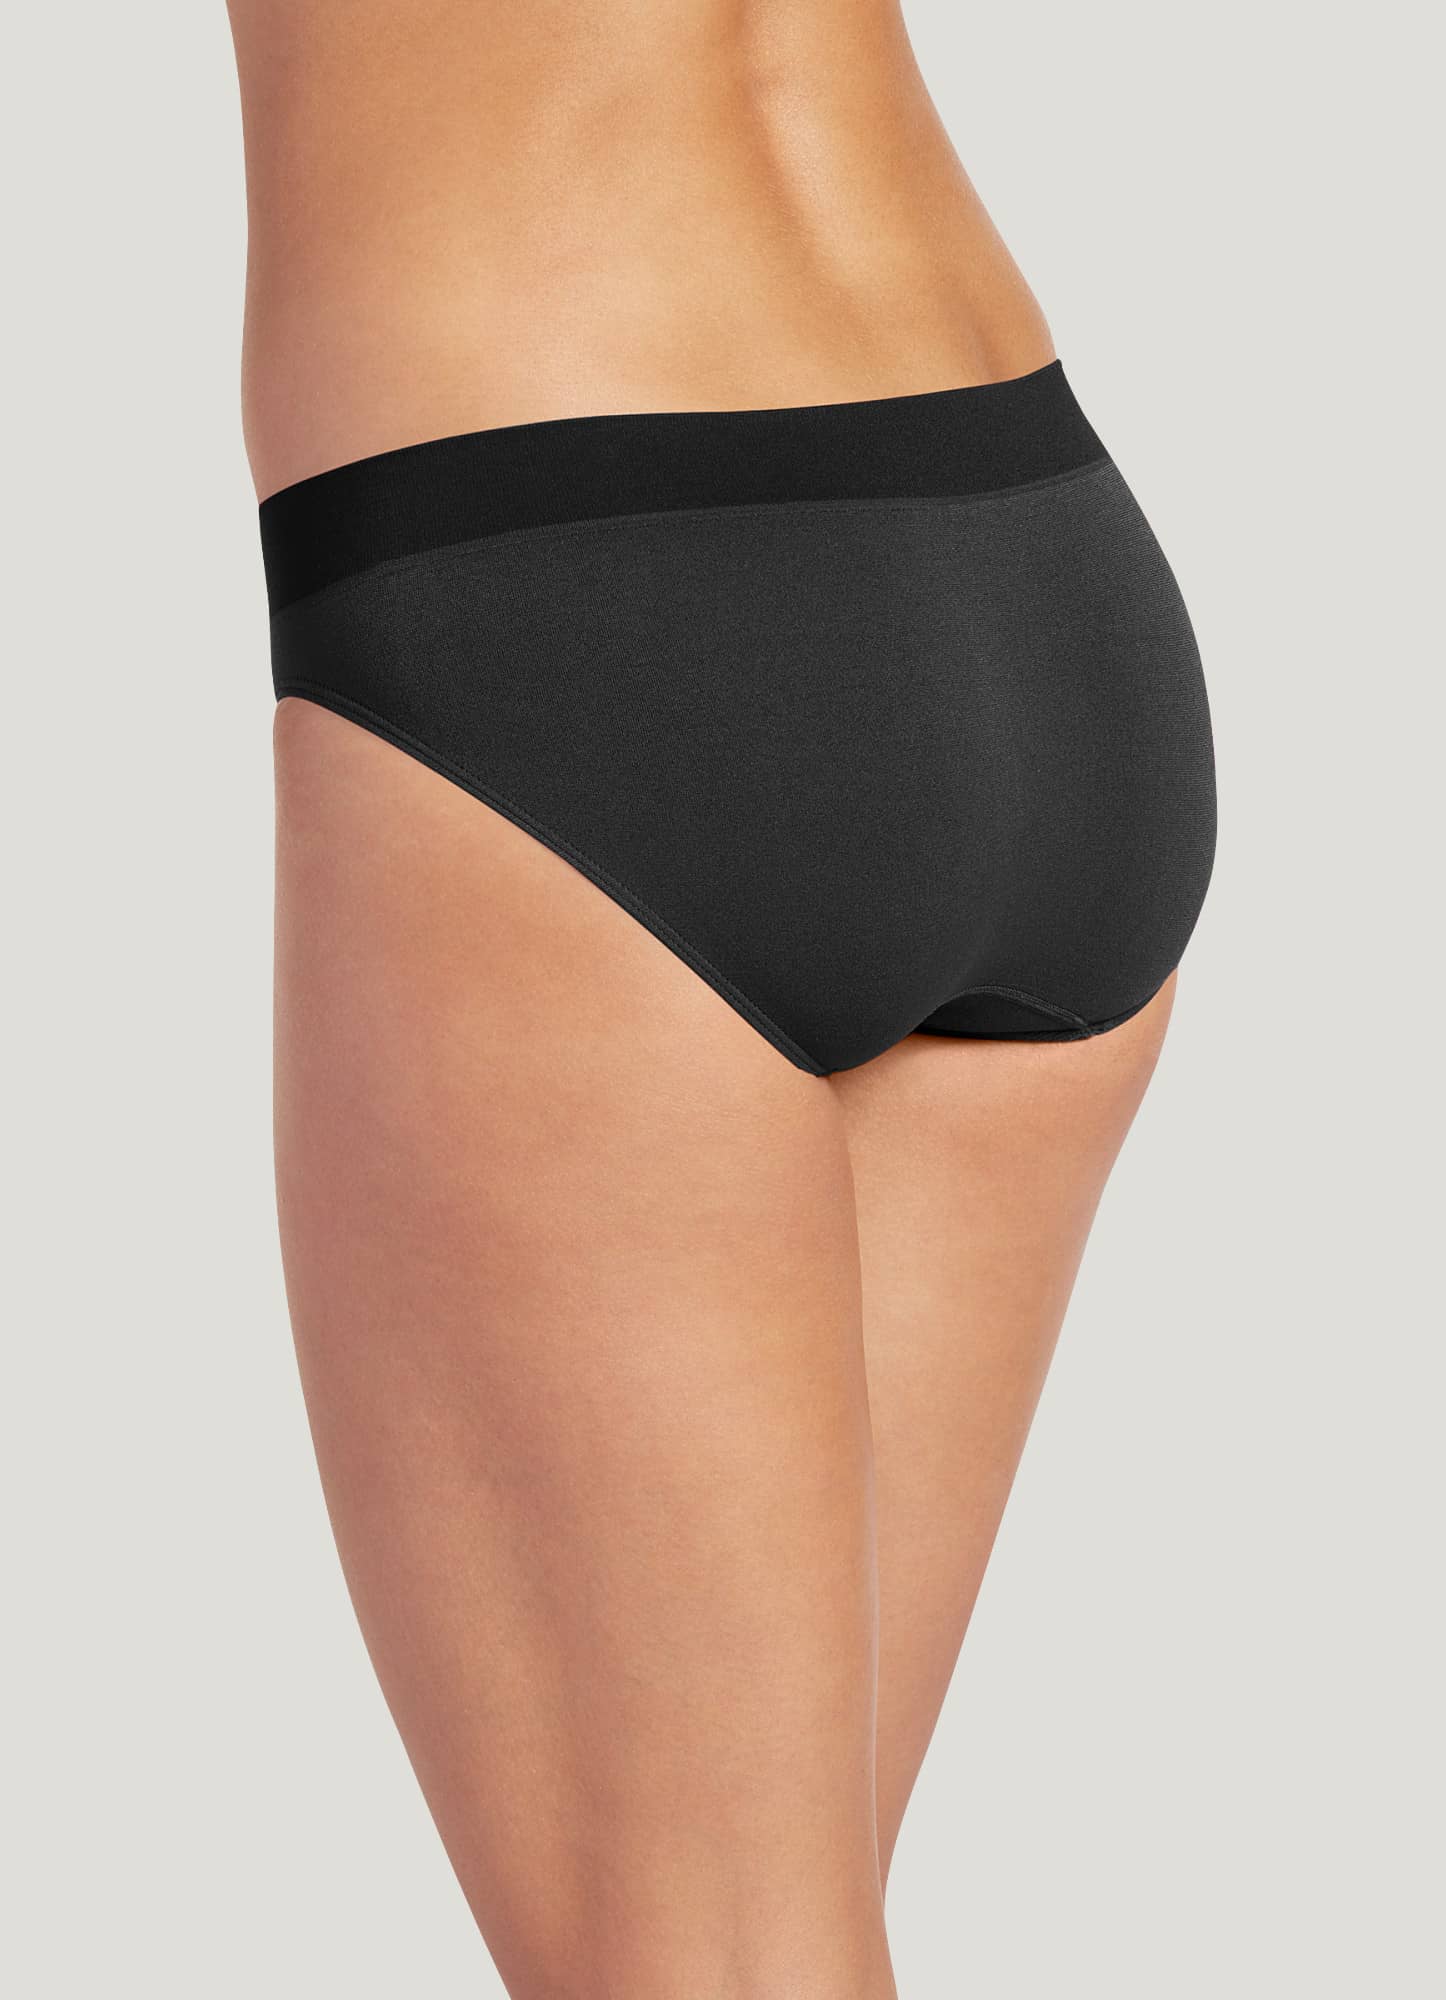 Jockey Generation™ Women's Slimming Thong - Black Xl : Target